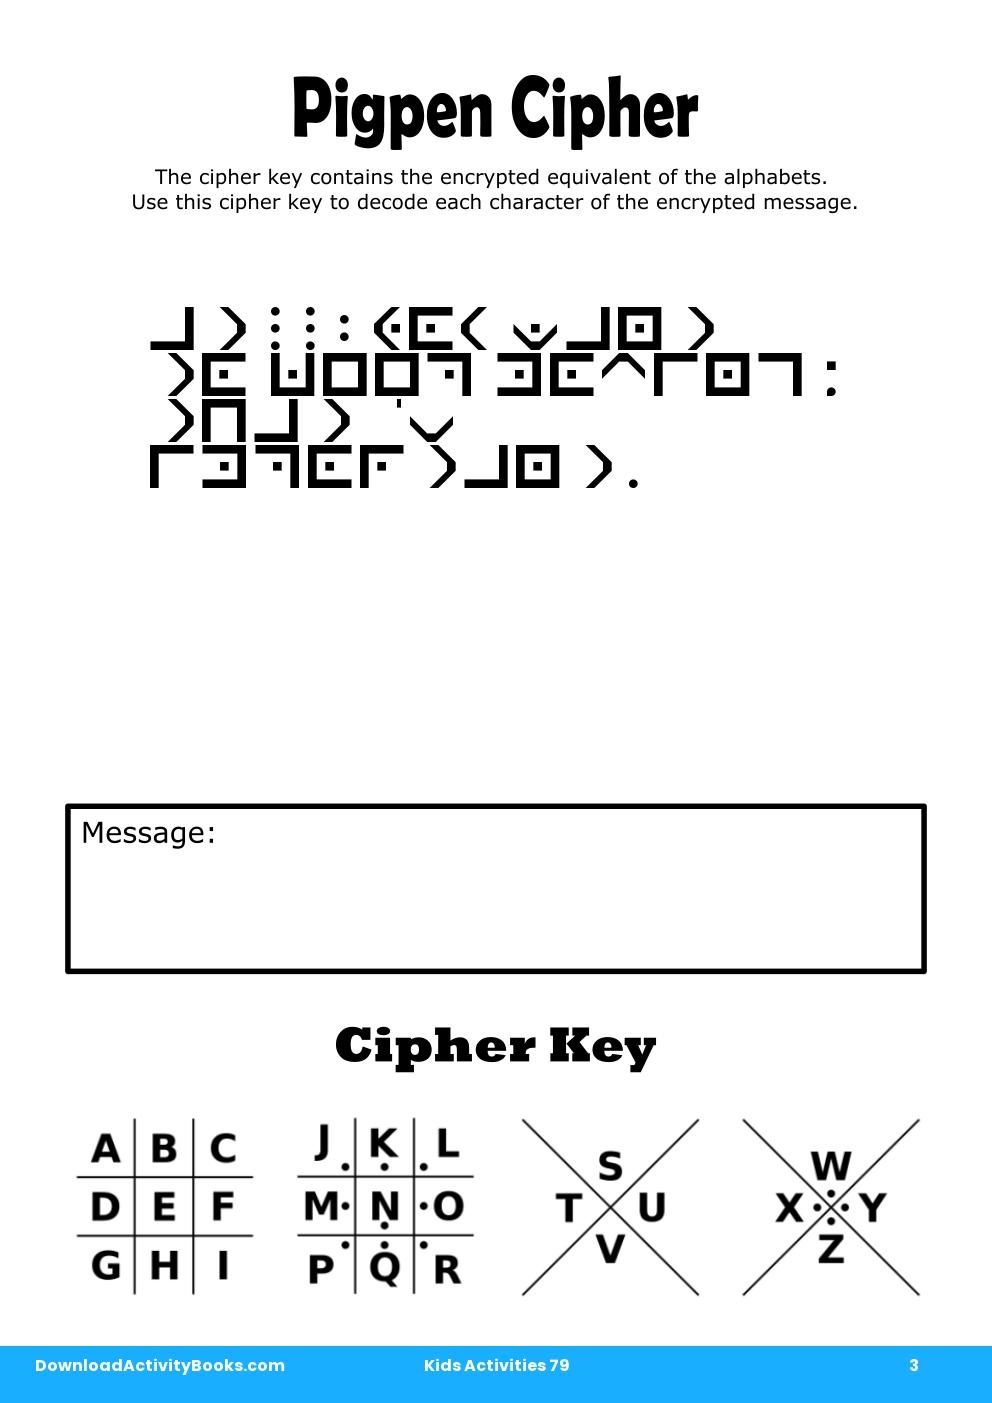 Pigpen Cipher in Kids Activities 79